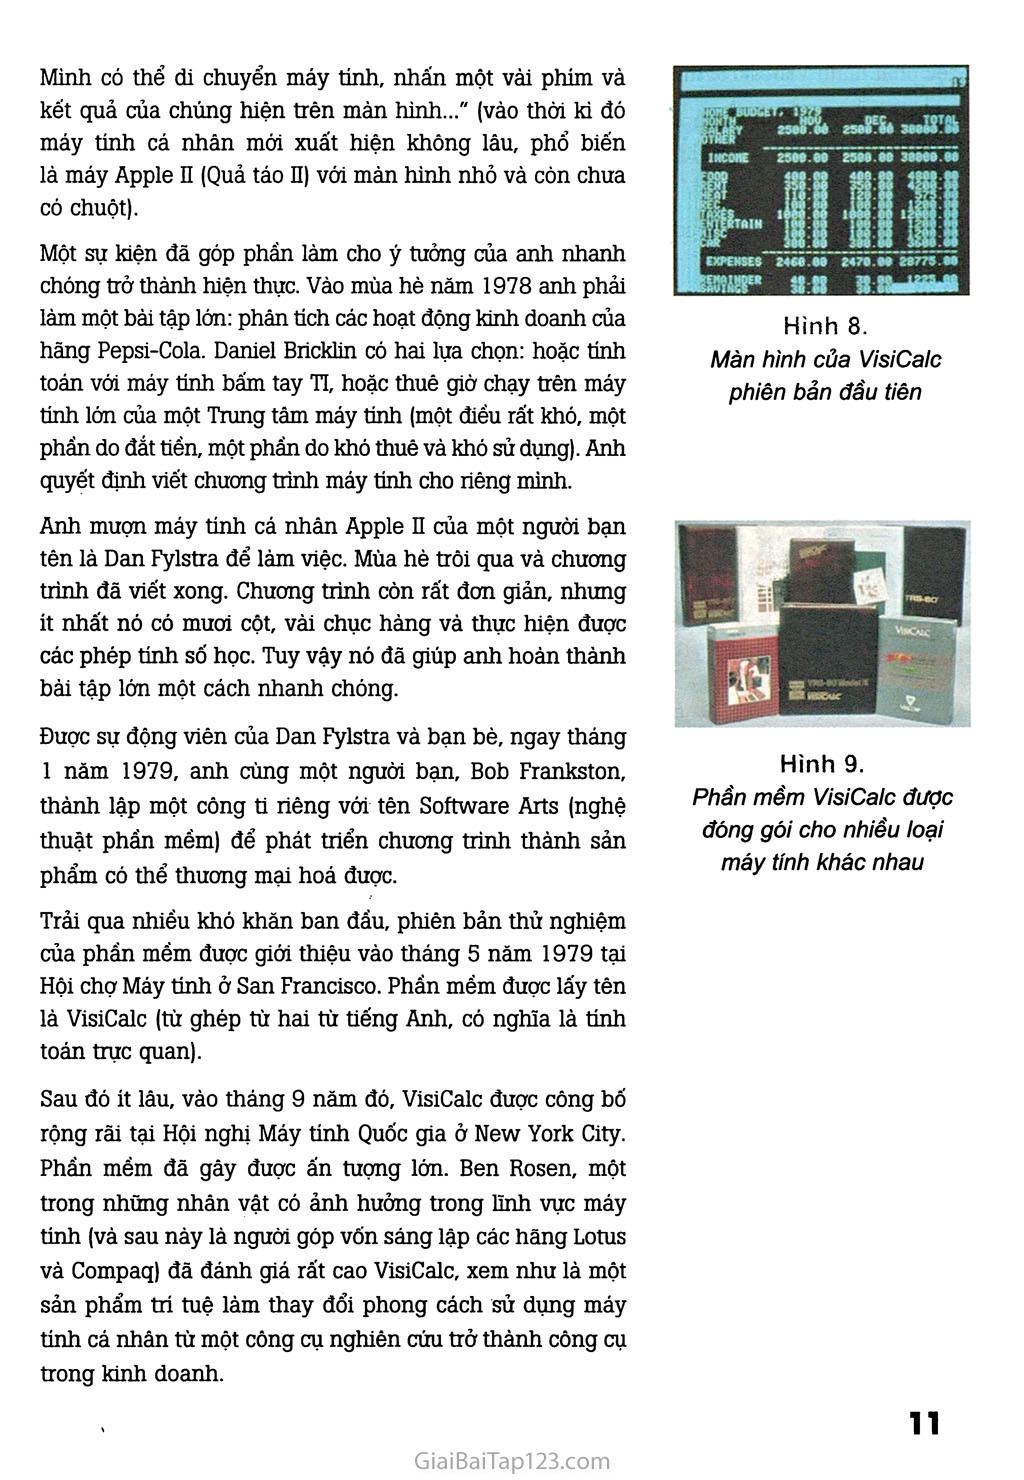 Bài đọc thêm 1. Chuyện cổ tích về VisiCalc trang 2